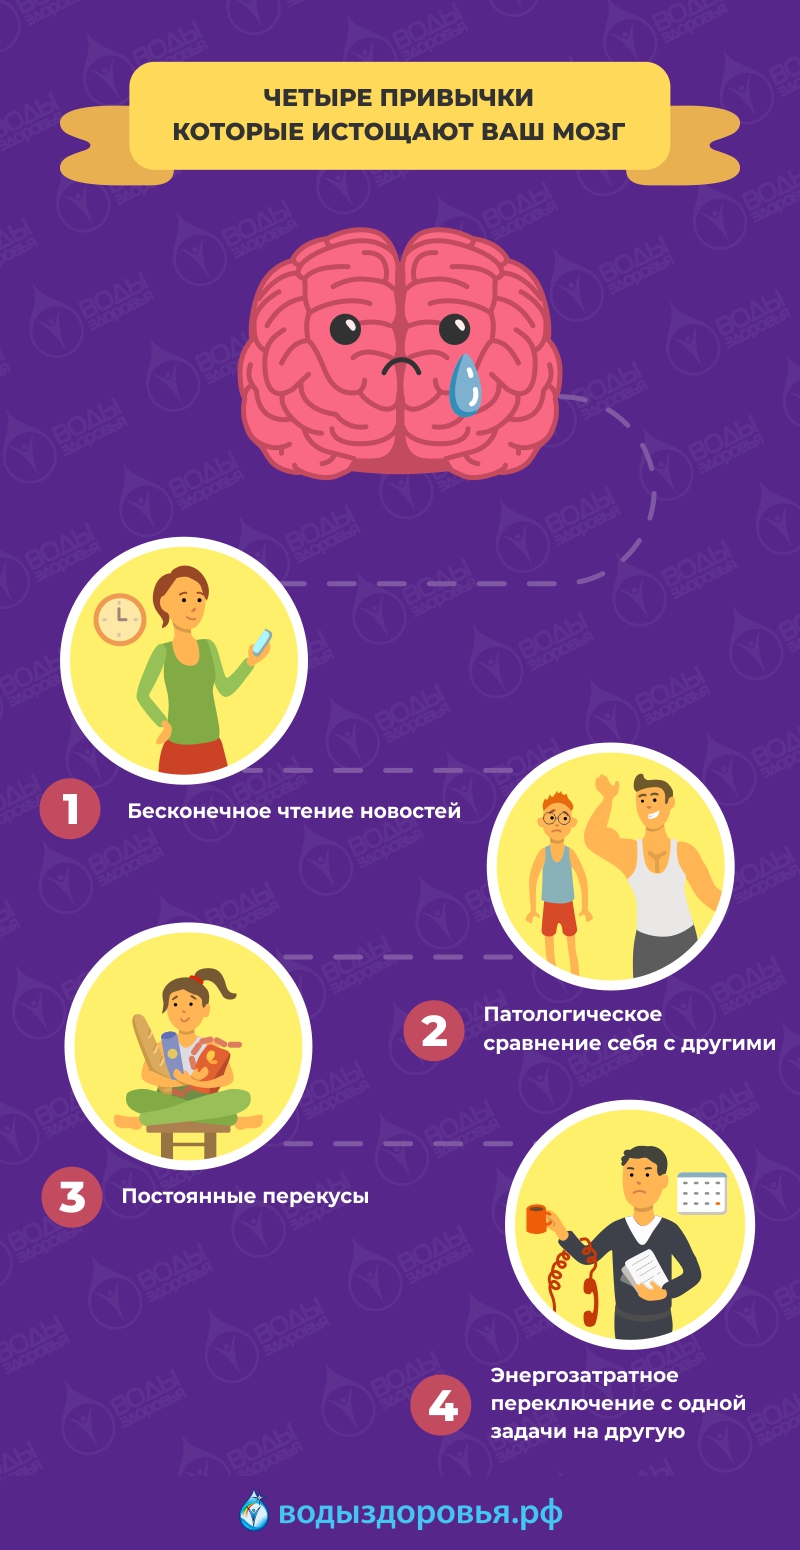 Четыре привычки которые истощают ваш мозг